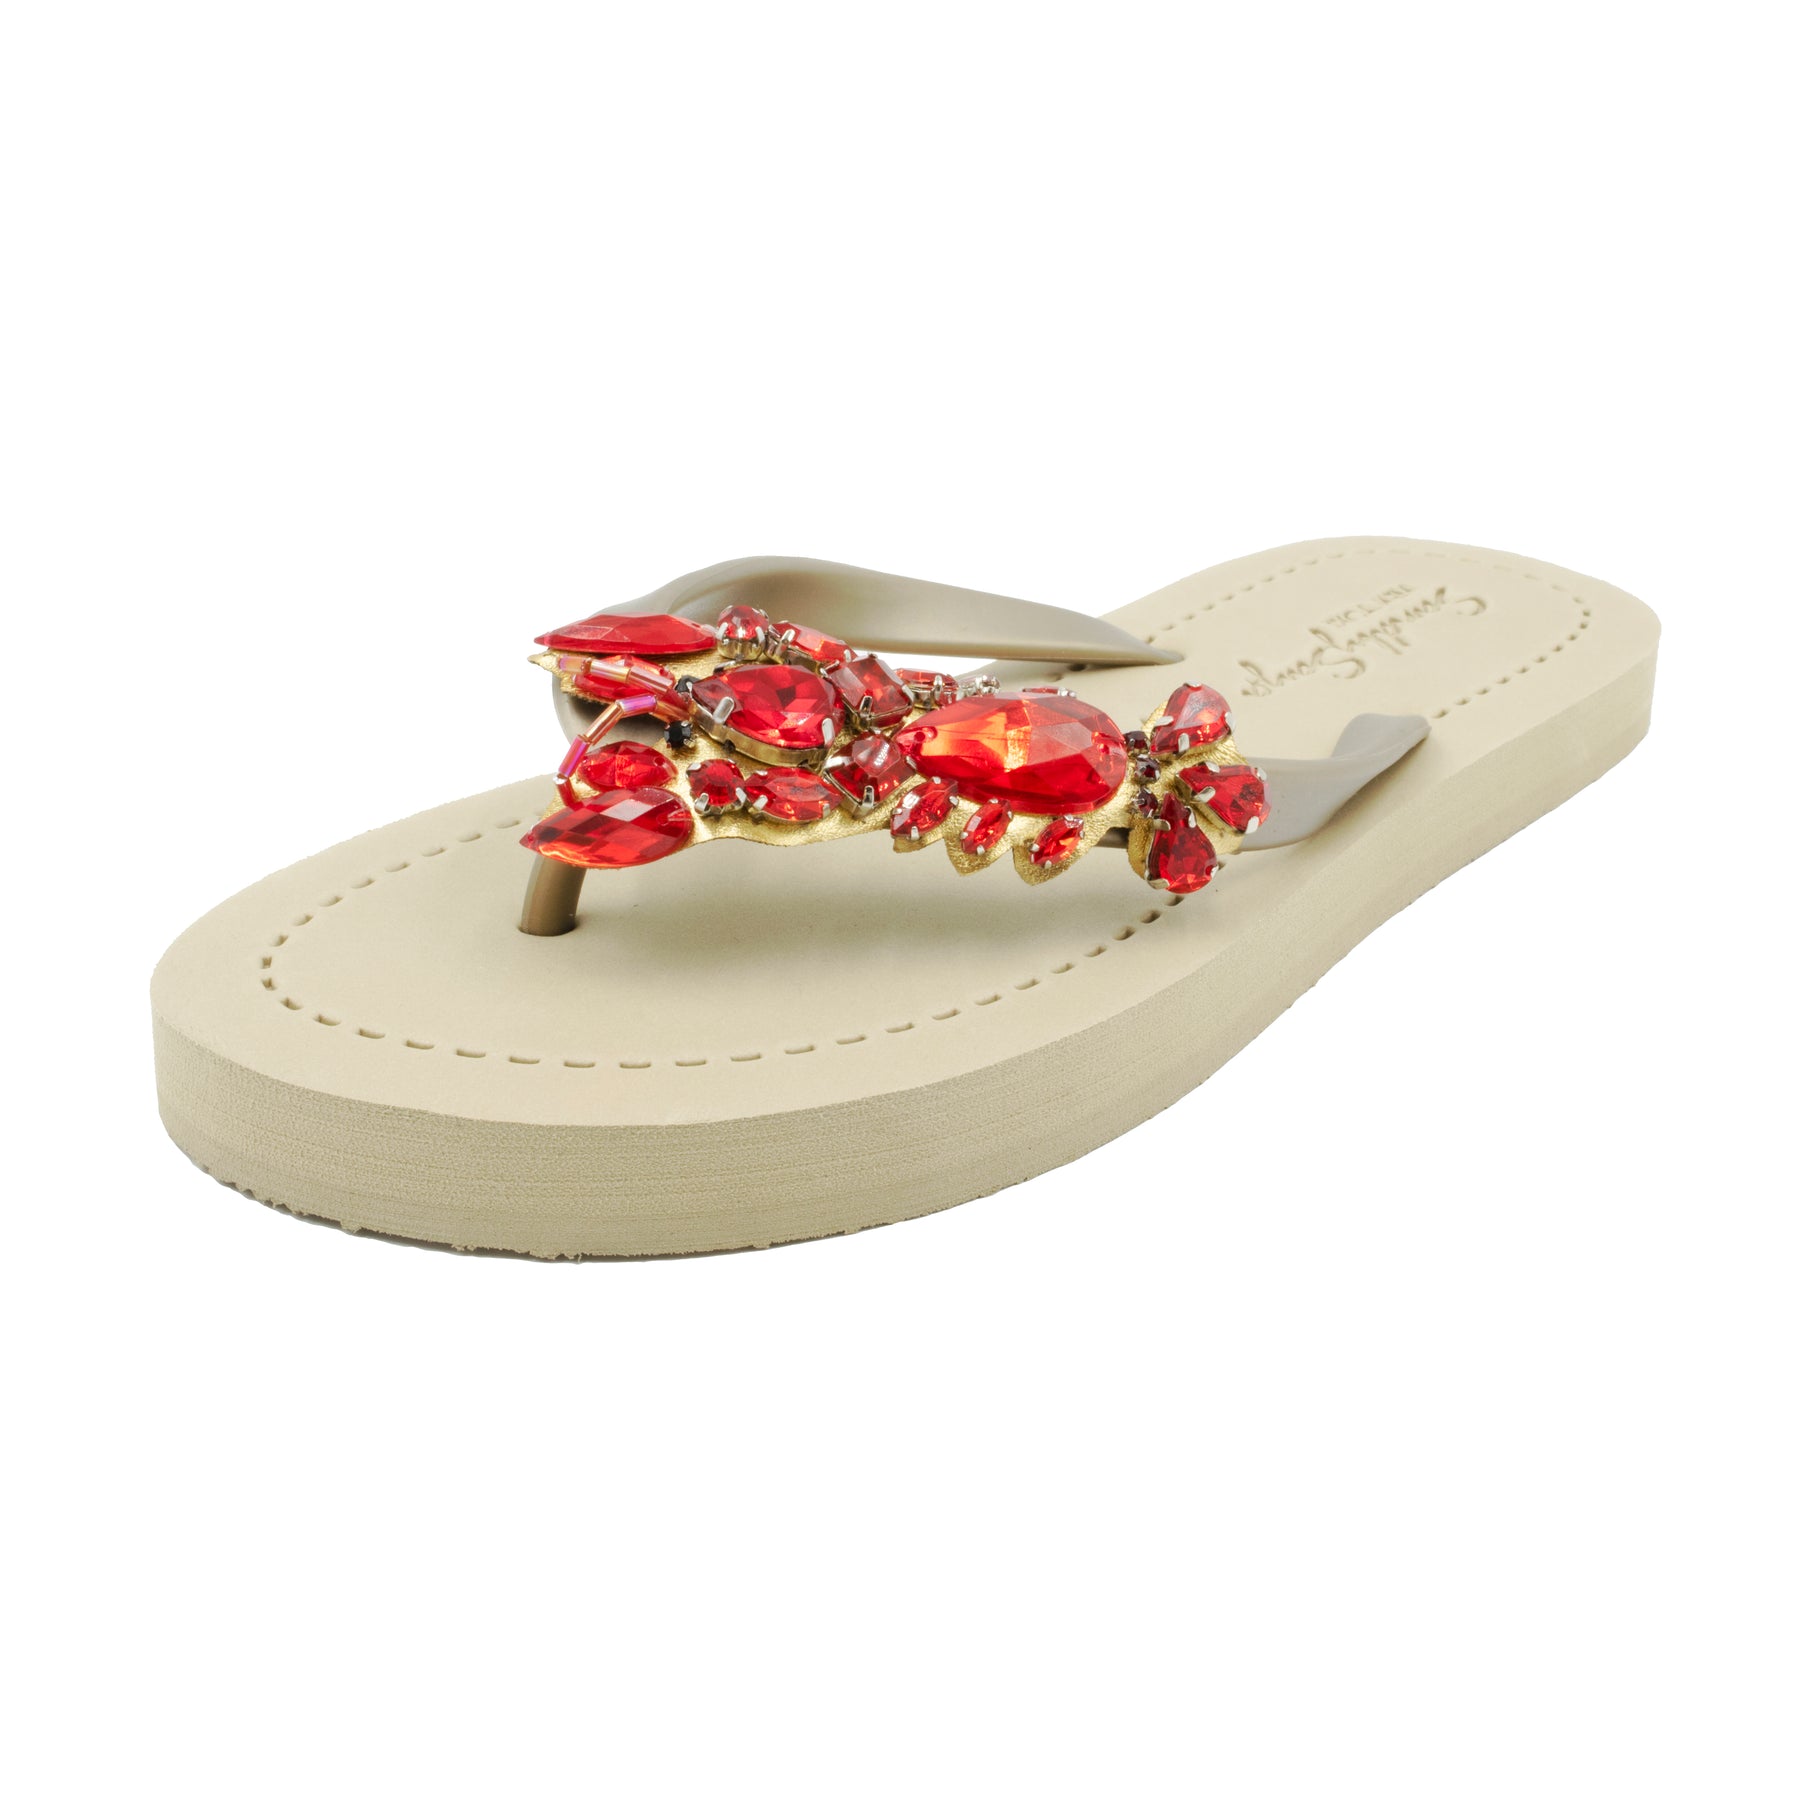 Lobster - Red  Rhinestone Embellished Flat Flip Flops Sandal for Women